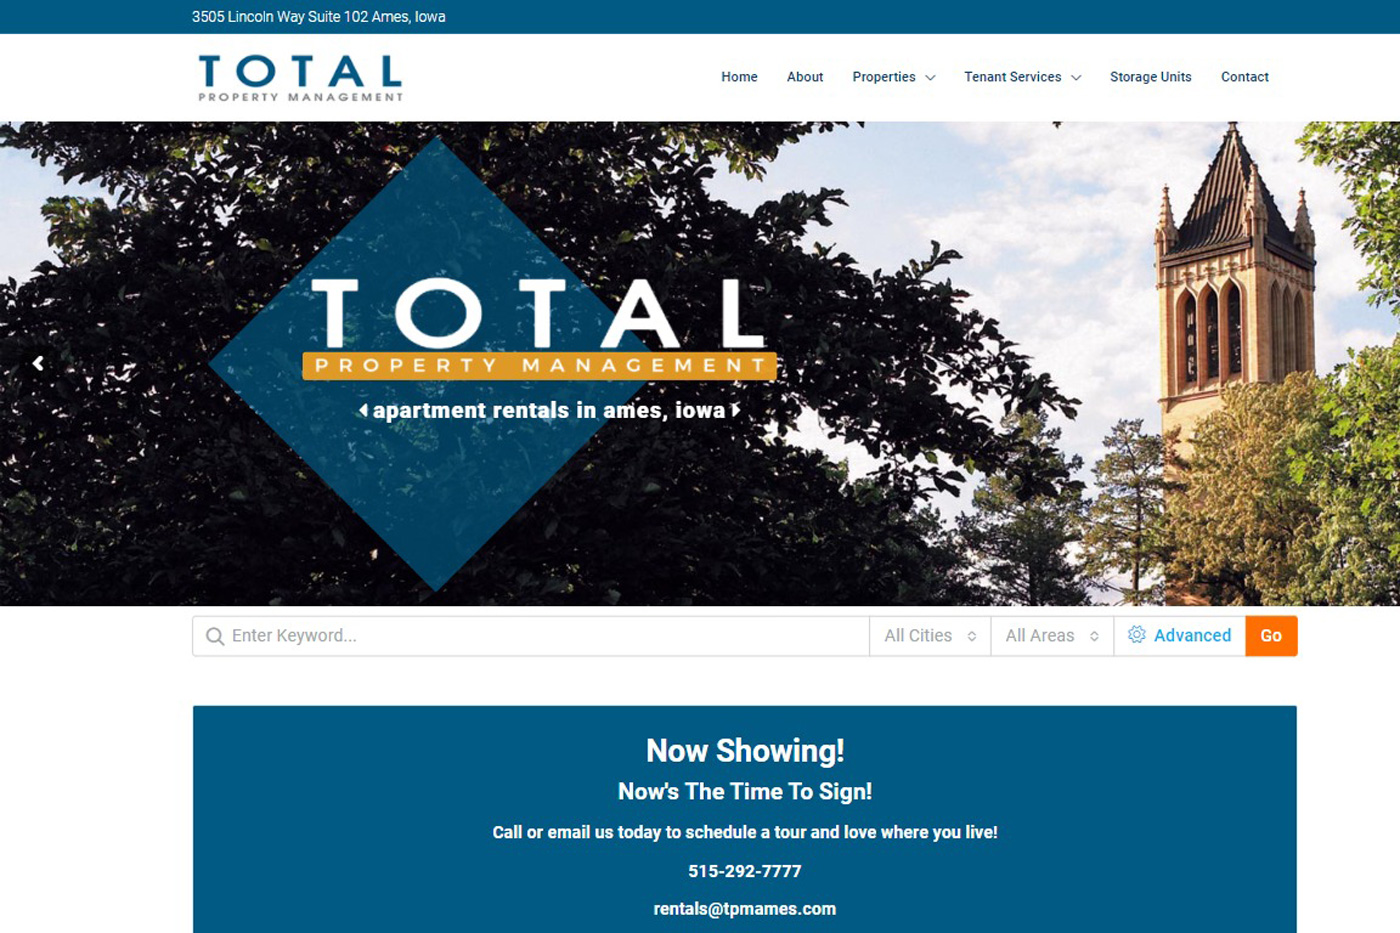 Screenshot of Total Property Management website design